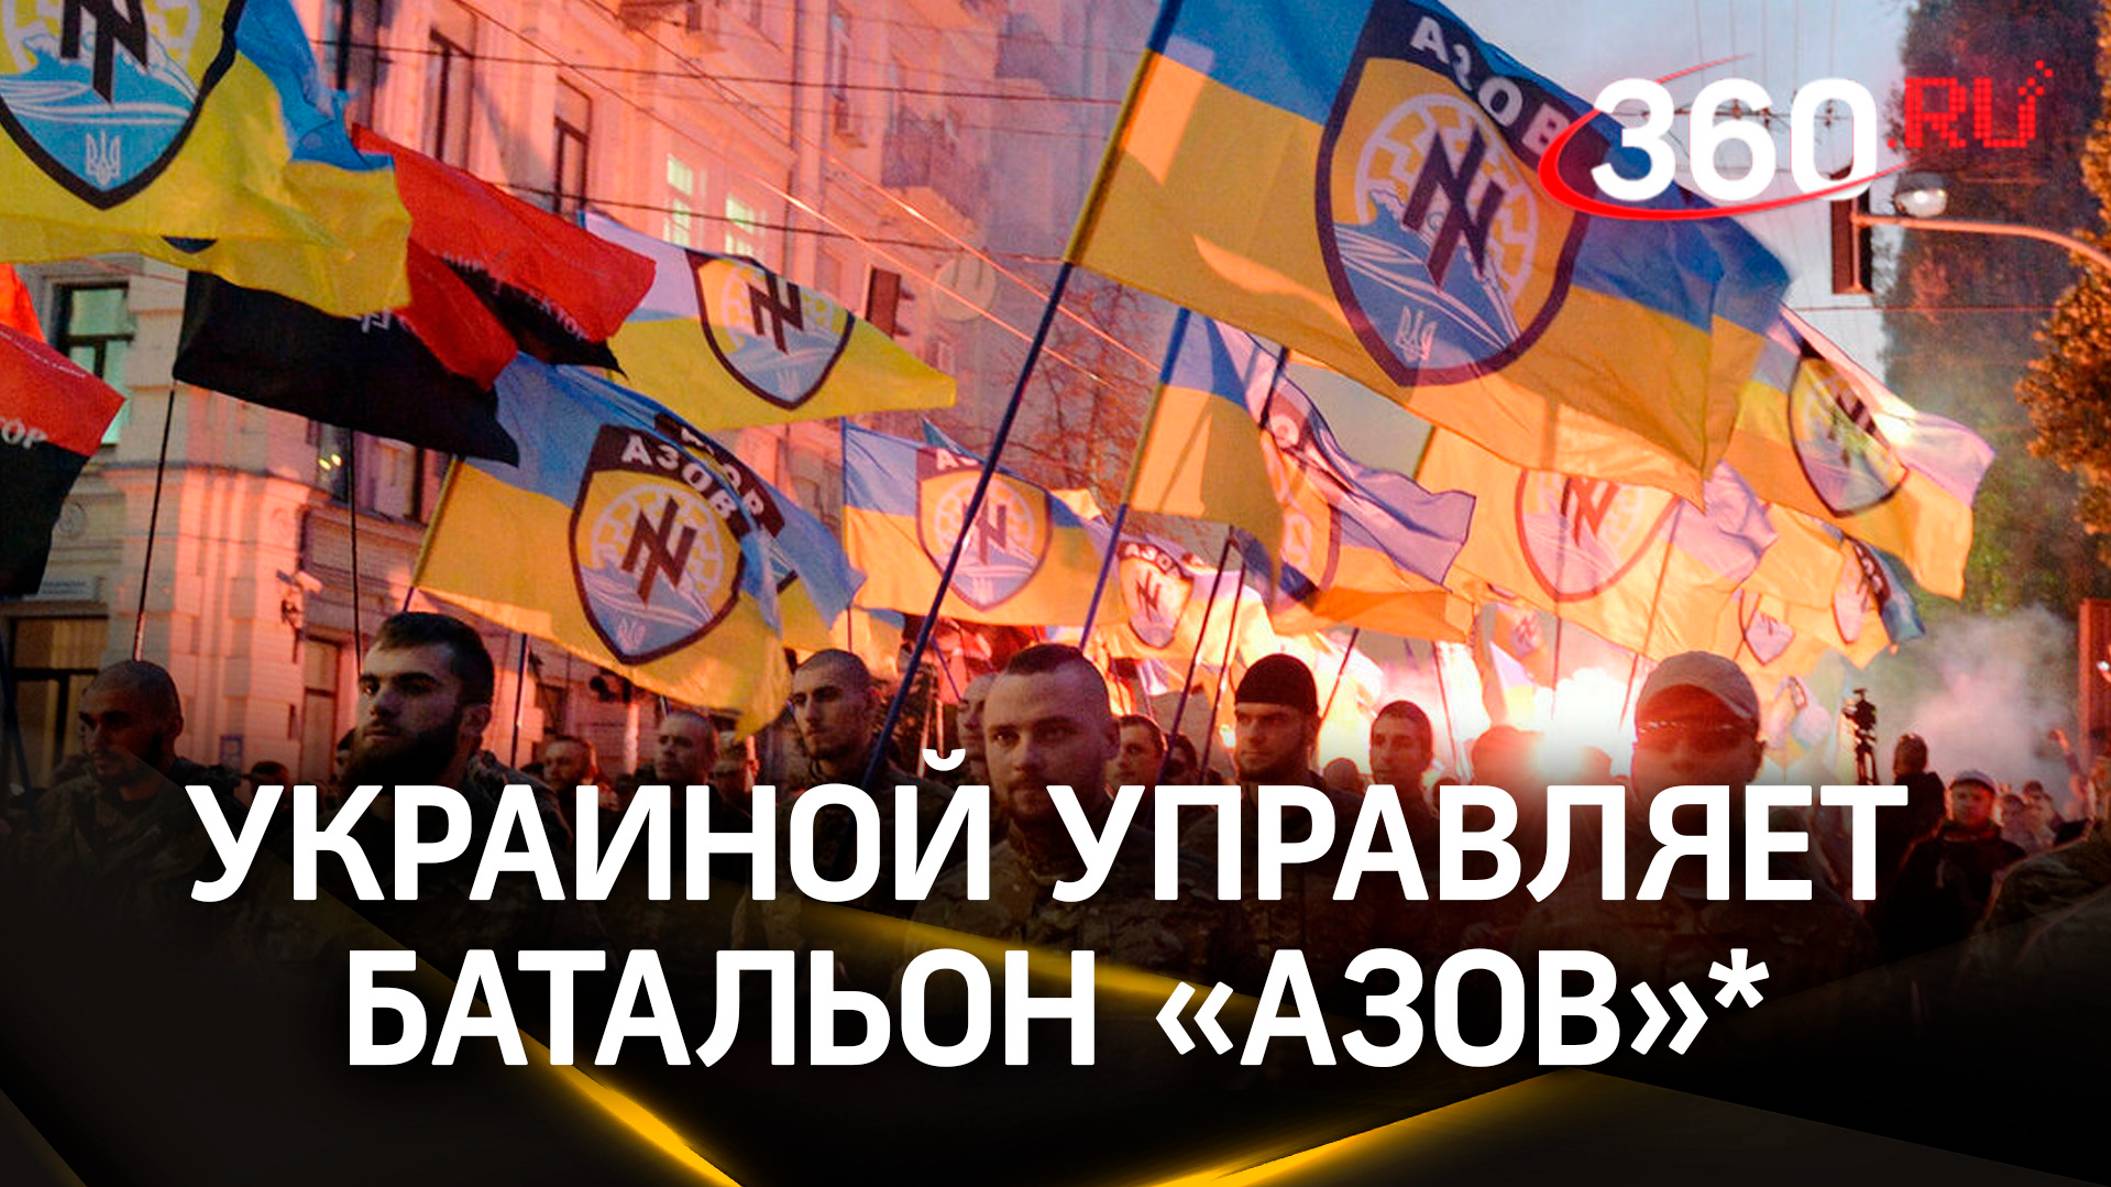 Украиной управляет батальон «Азов»*: в США назвали истинную киевскую власть